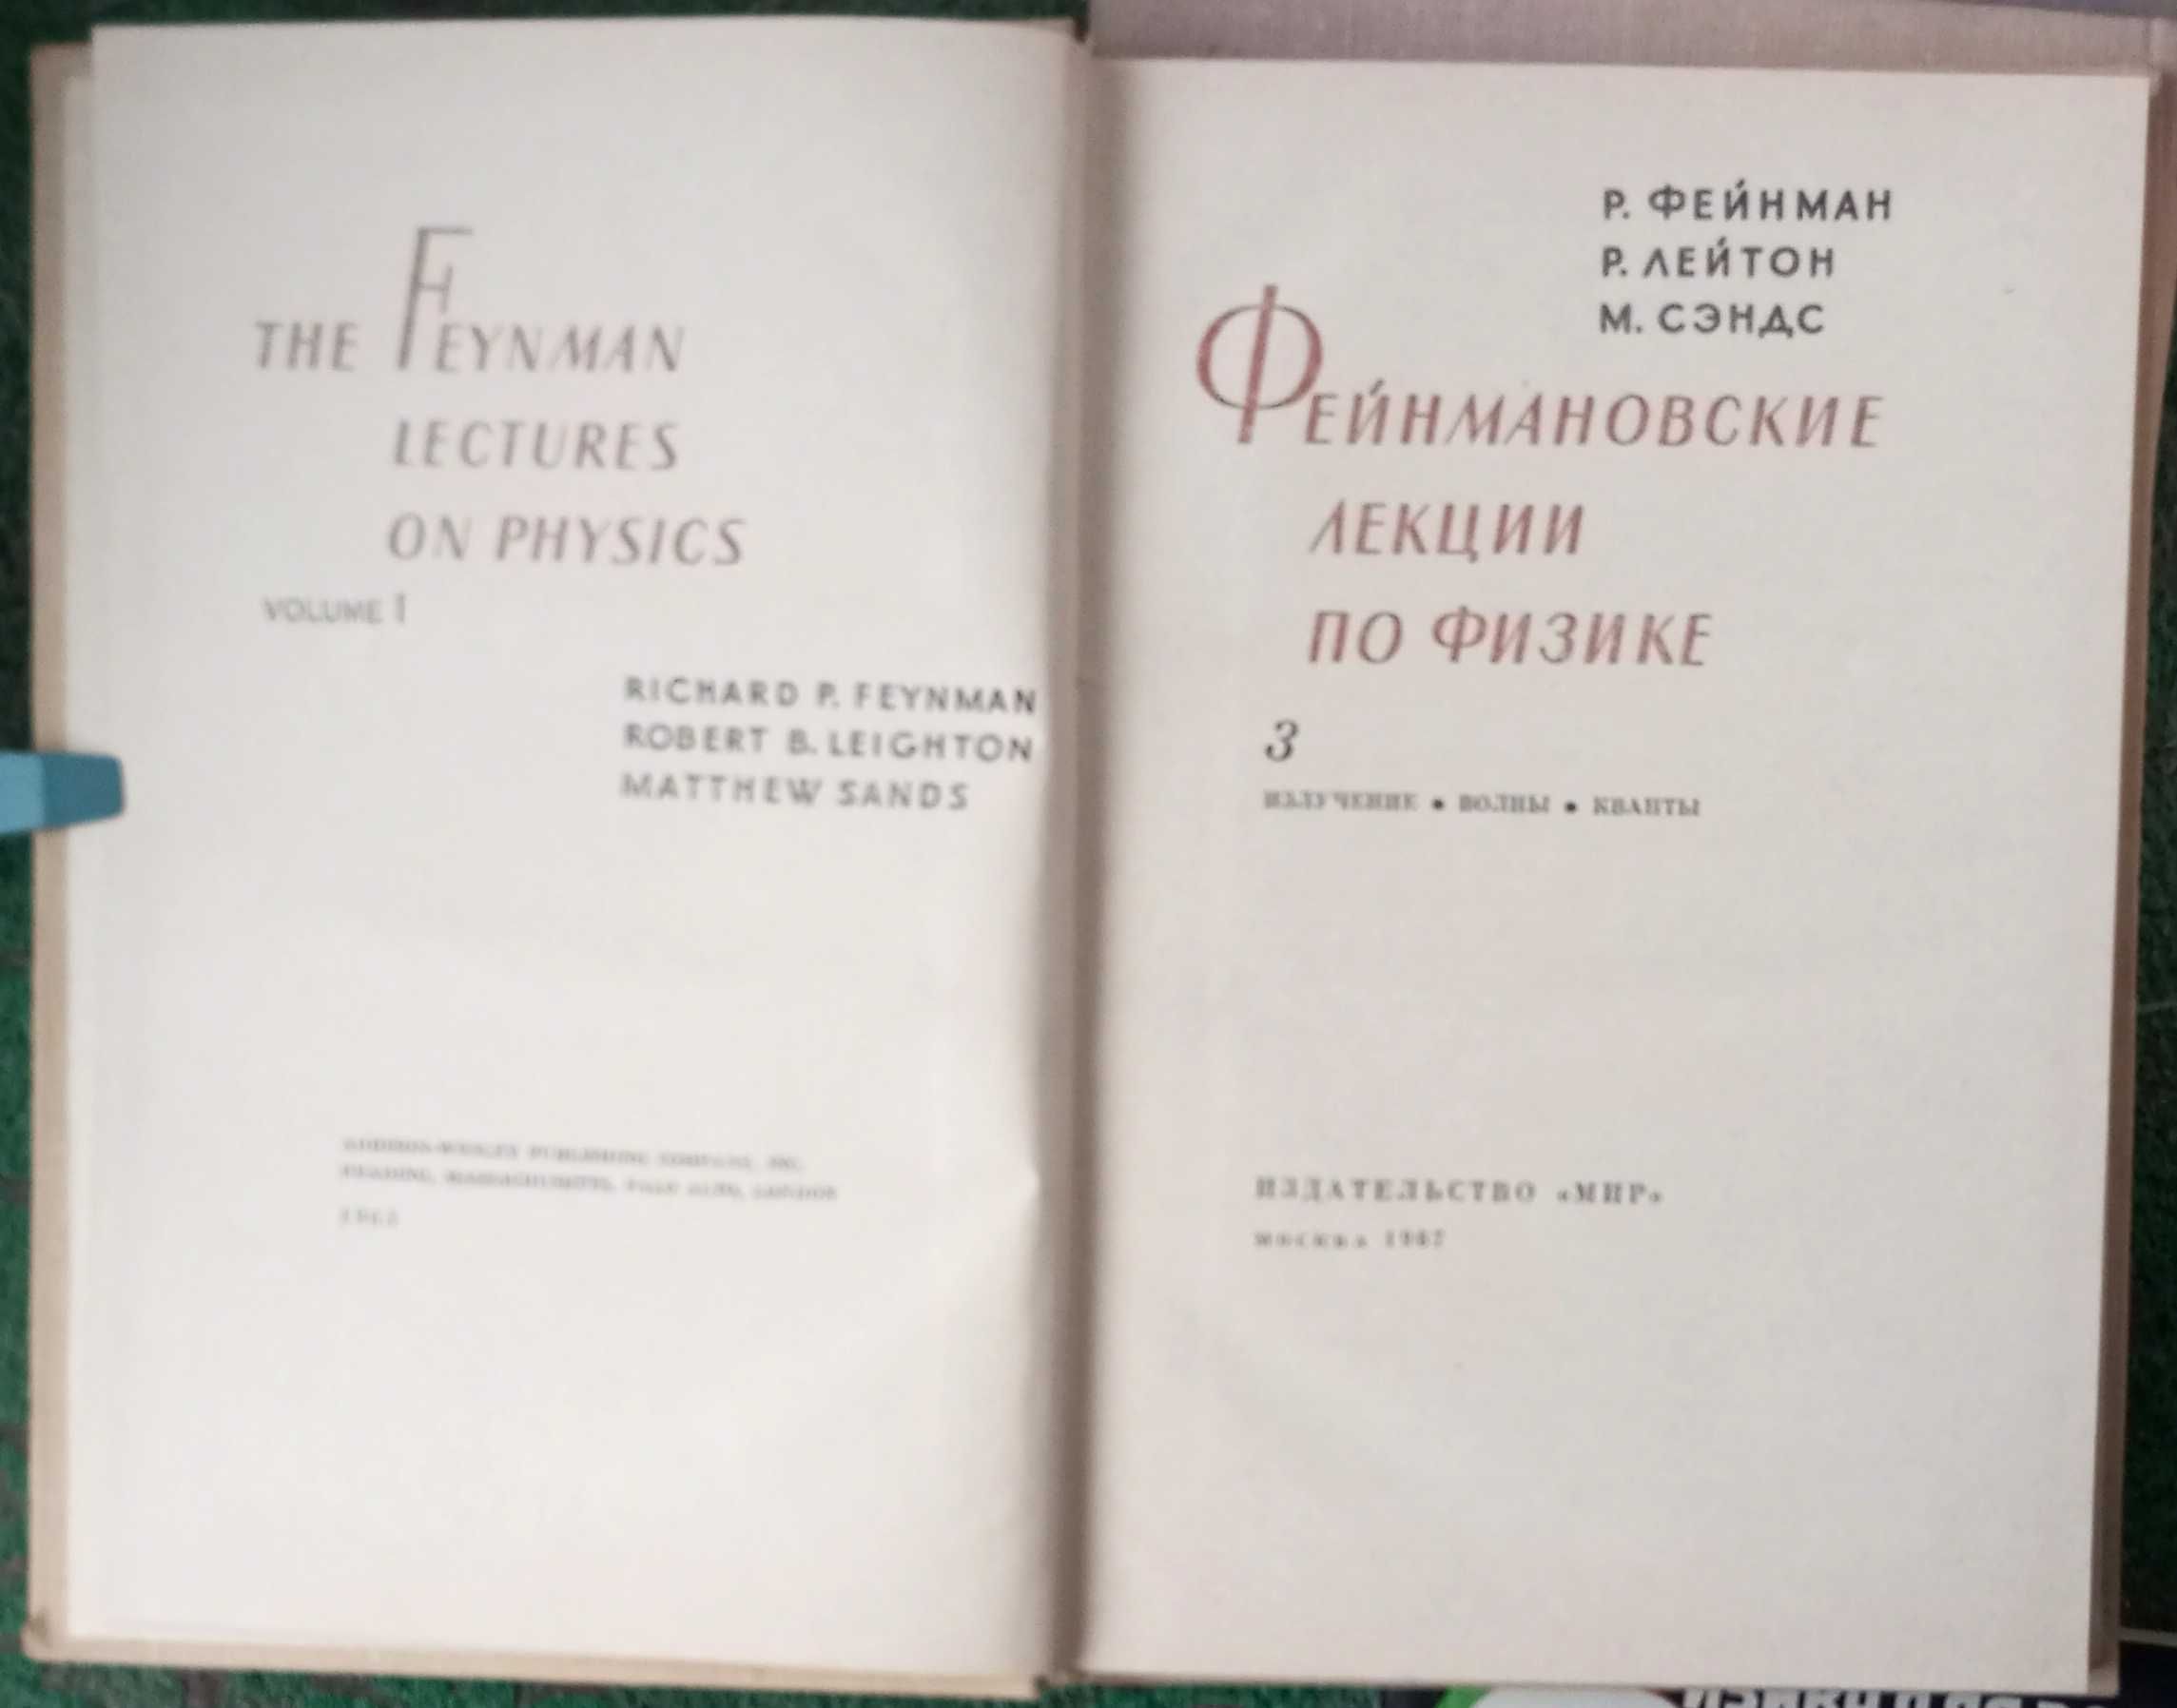 Фейнмановские лекции по физике. 2,3,9. Р.Фейнман, Р. Лейтон, И.Сэндс